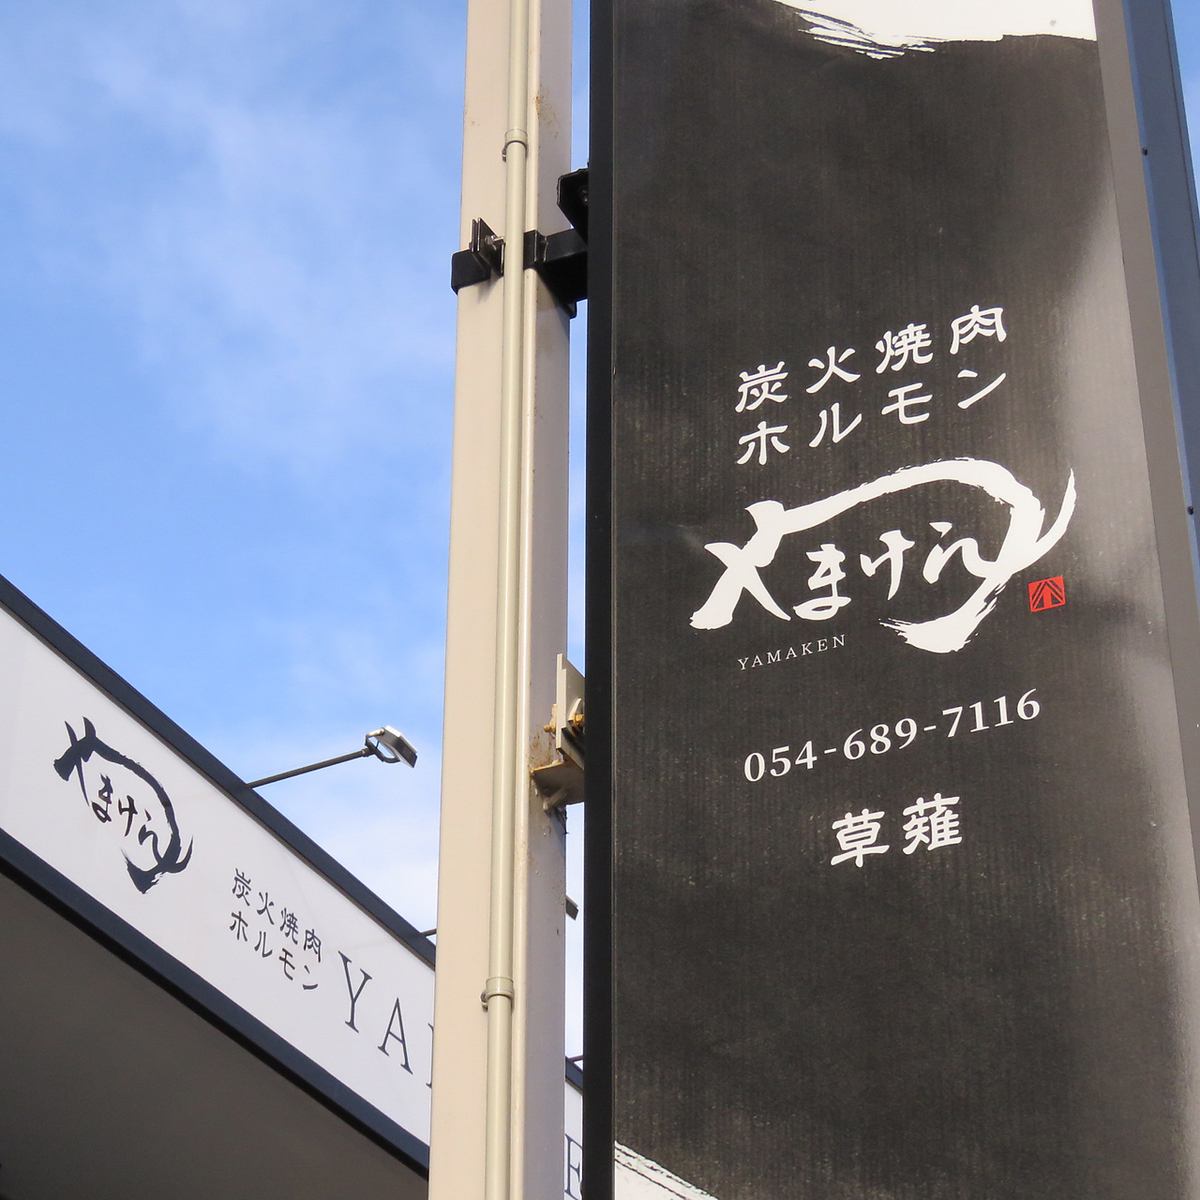 【人氣餐廳Yamaken進駐草薙！】先到先得！